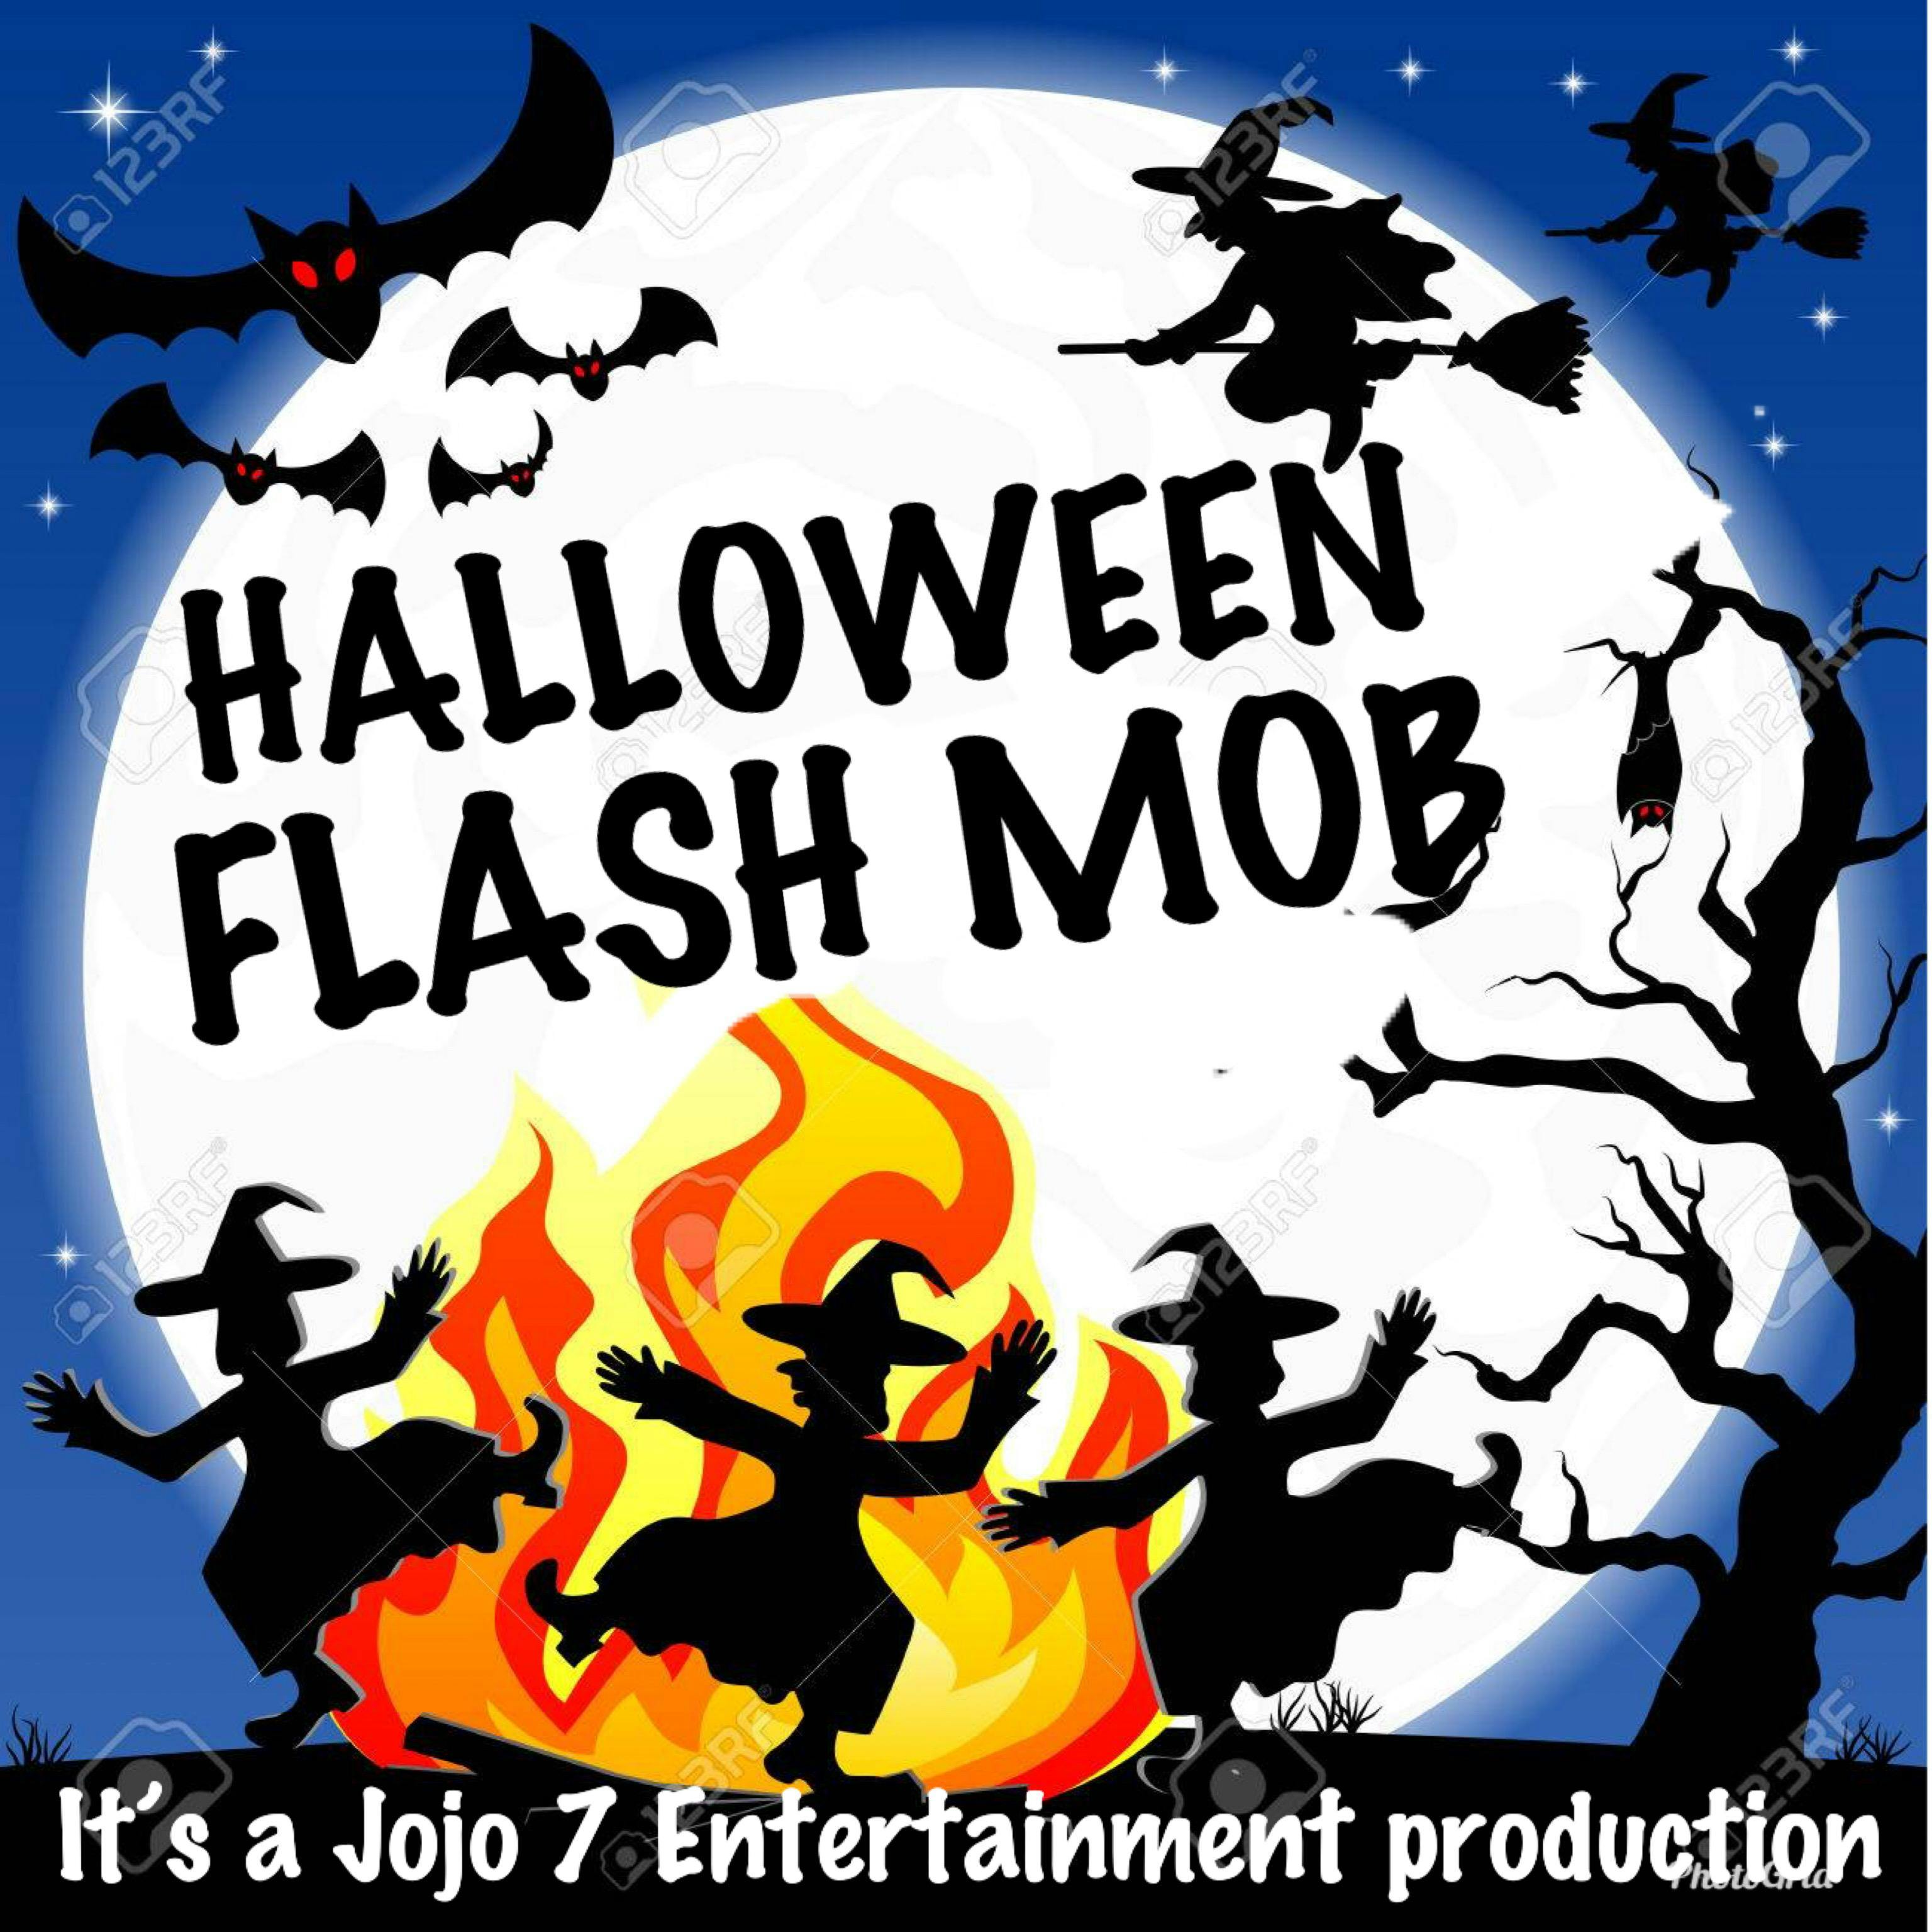 Halloween Flash Mob